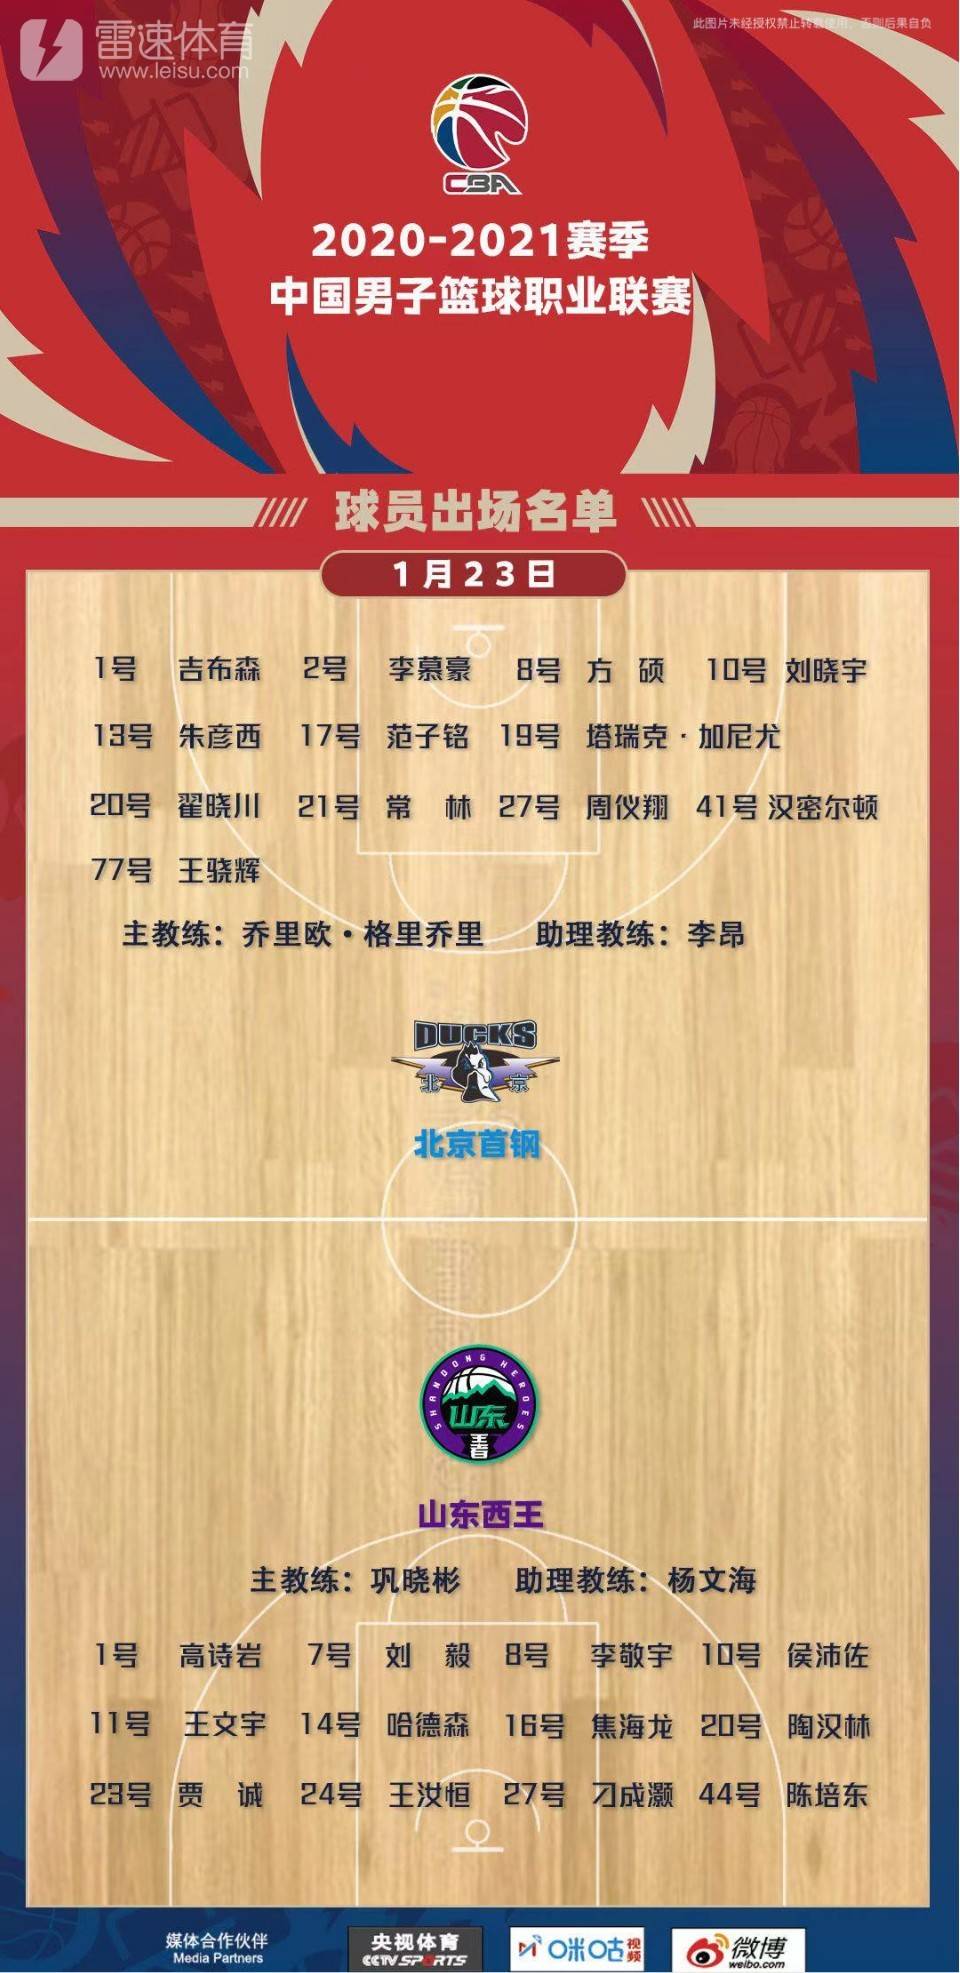 Quan chức nhóm Liêu Ninh: Han Dejun quyết tâm chơi trong giai đoạn thứ ba của mùa giải thông thường